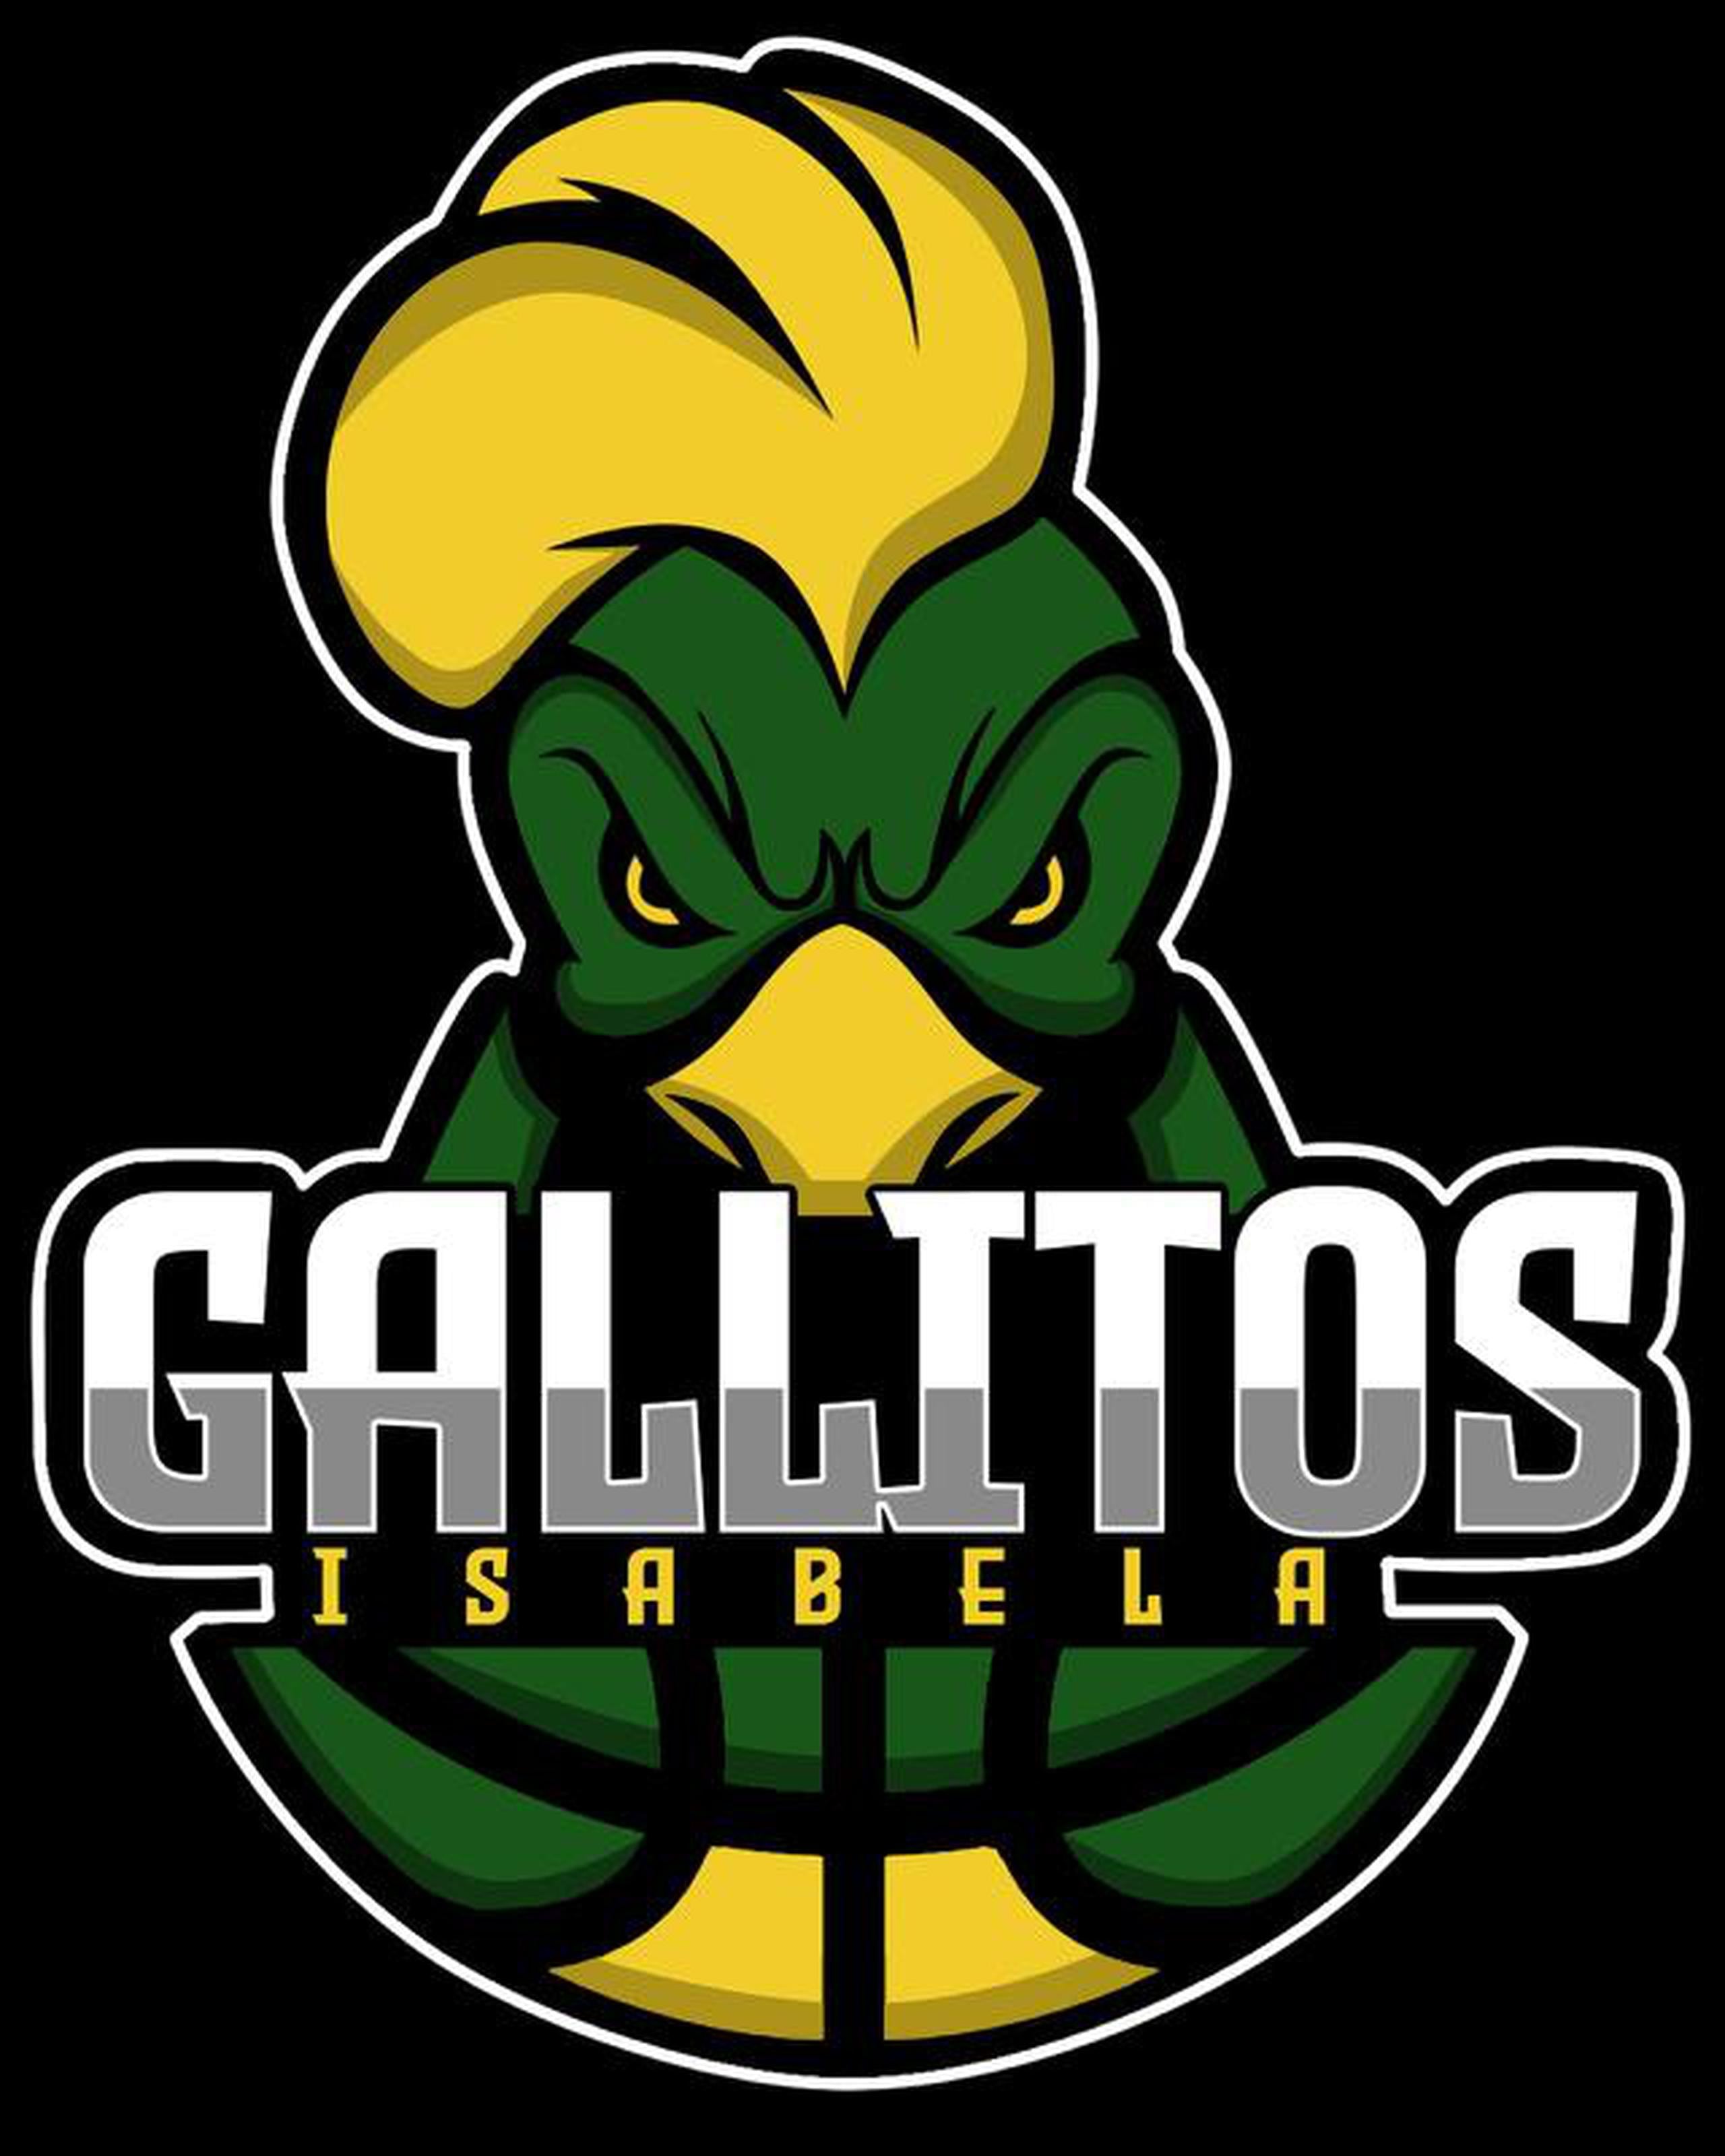 Este es preliminarmente el logo que están presentado los interesados en revivir a los Gallitos de Isabela.